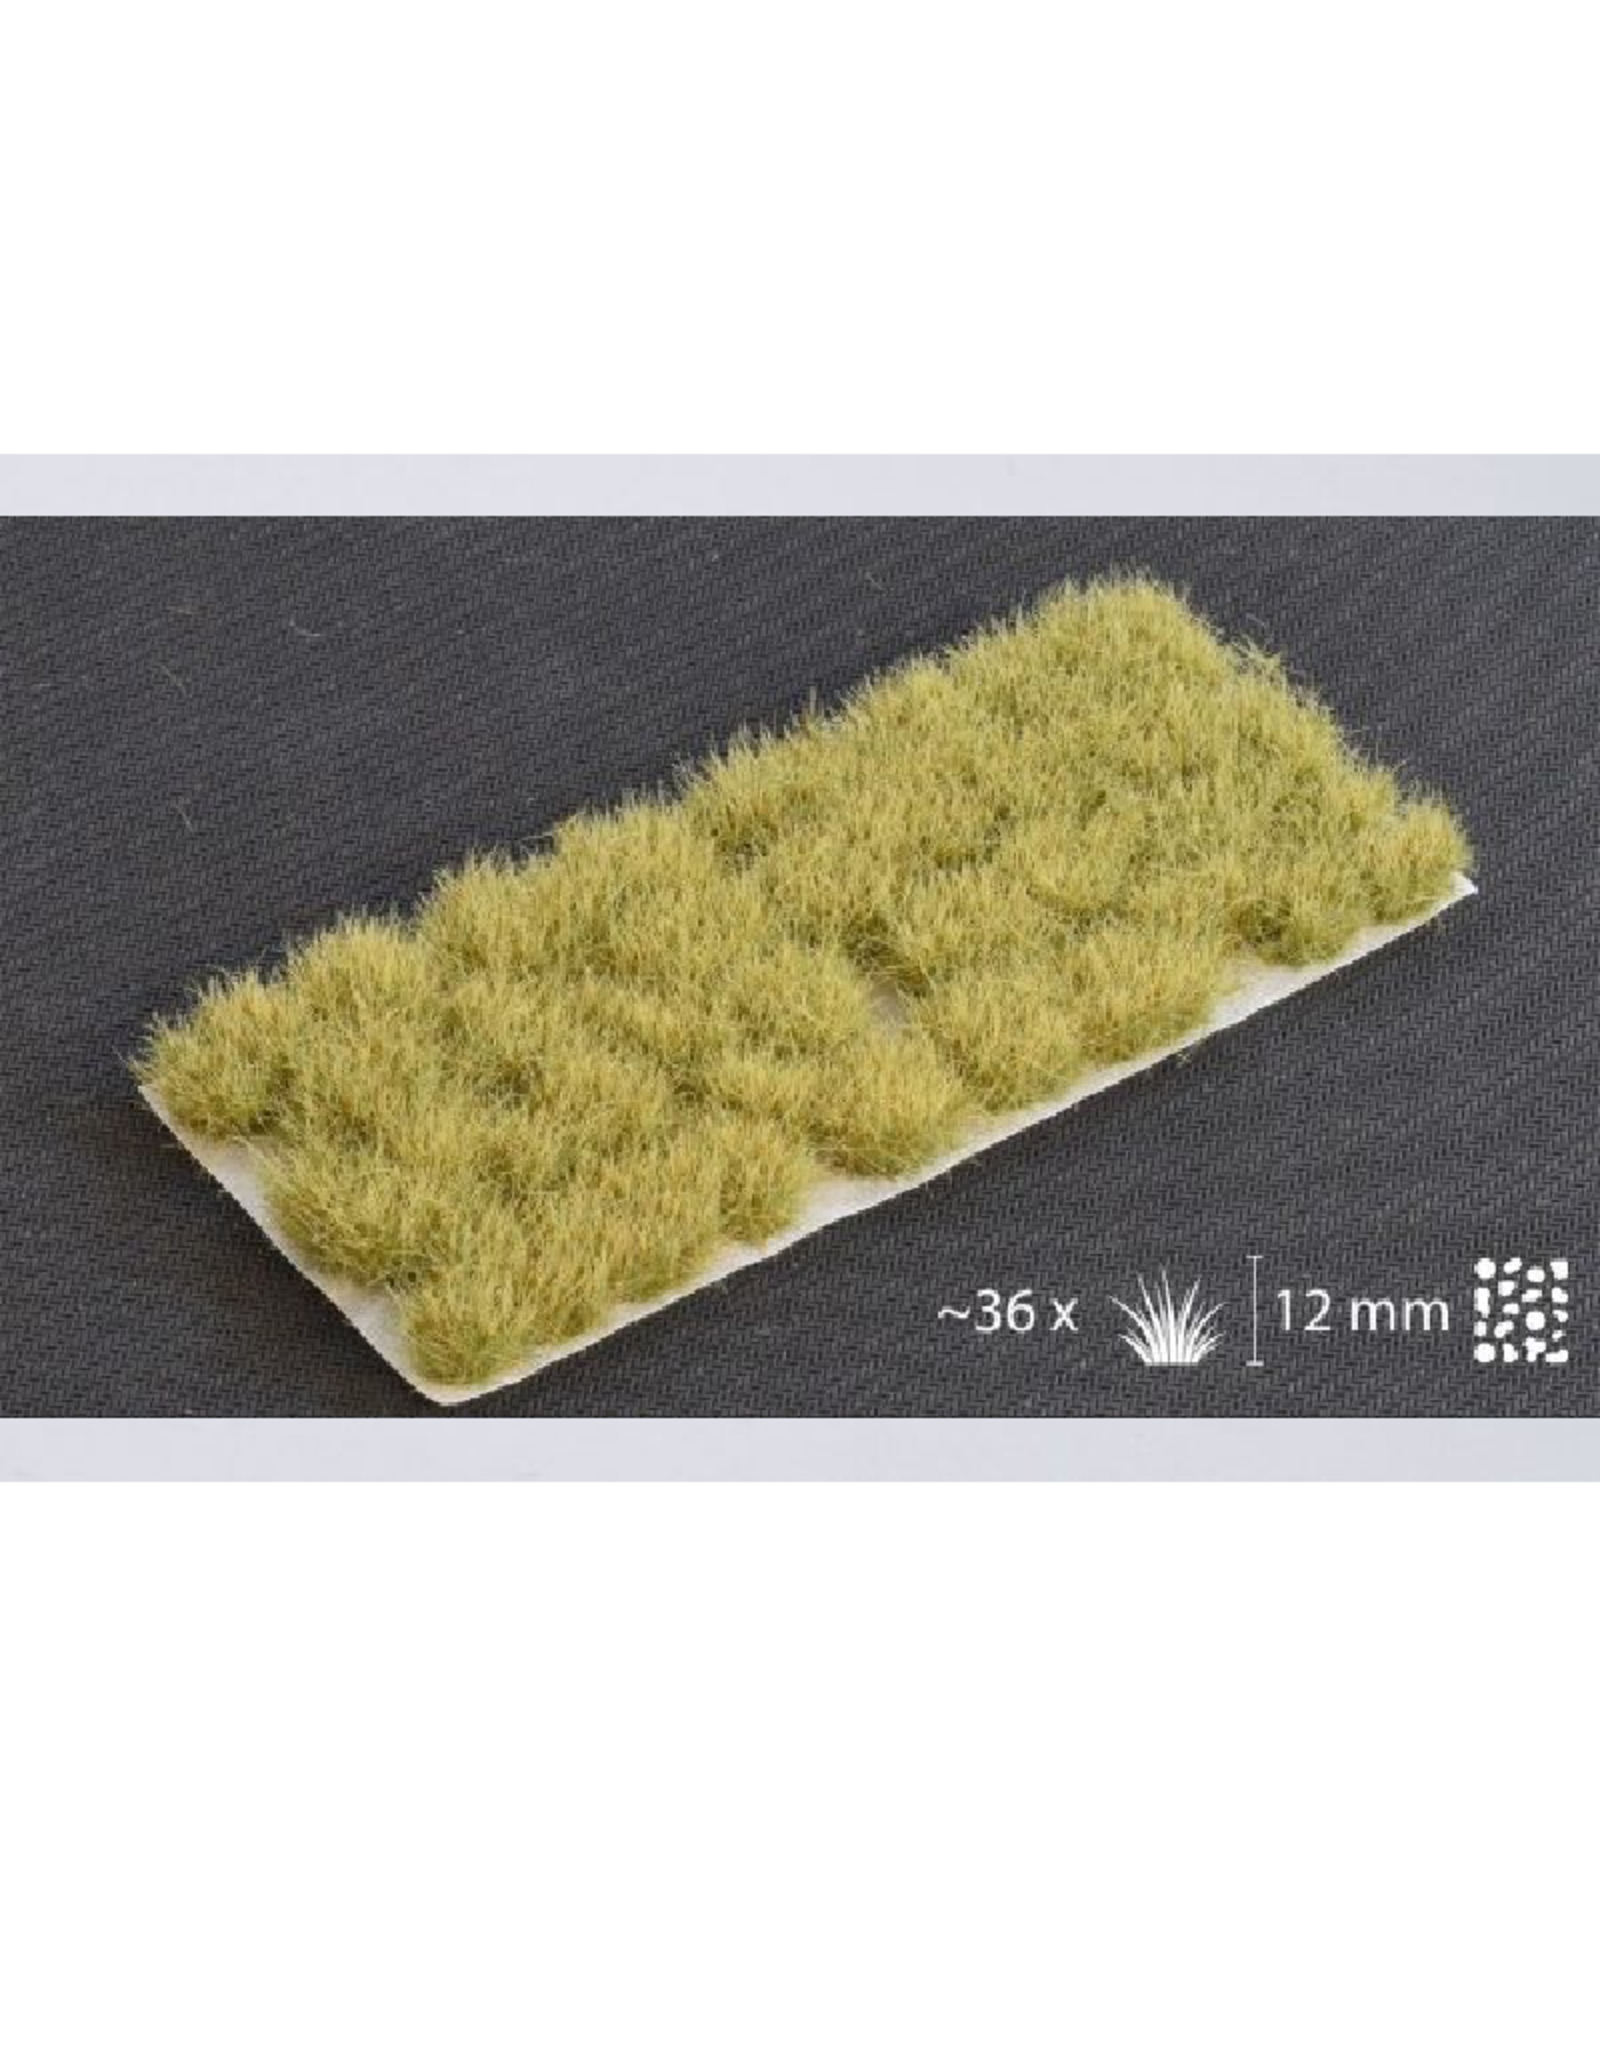 Gamers' Grass Autumn XL tufts (12mm)